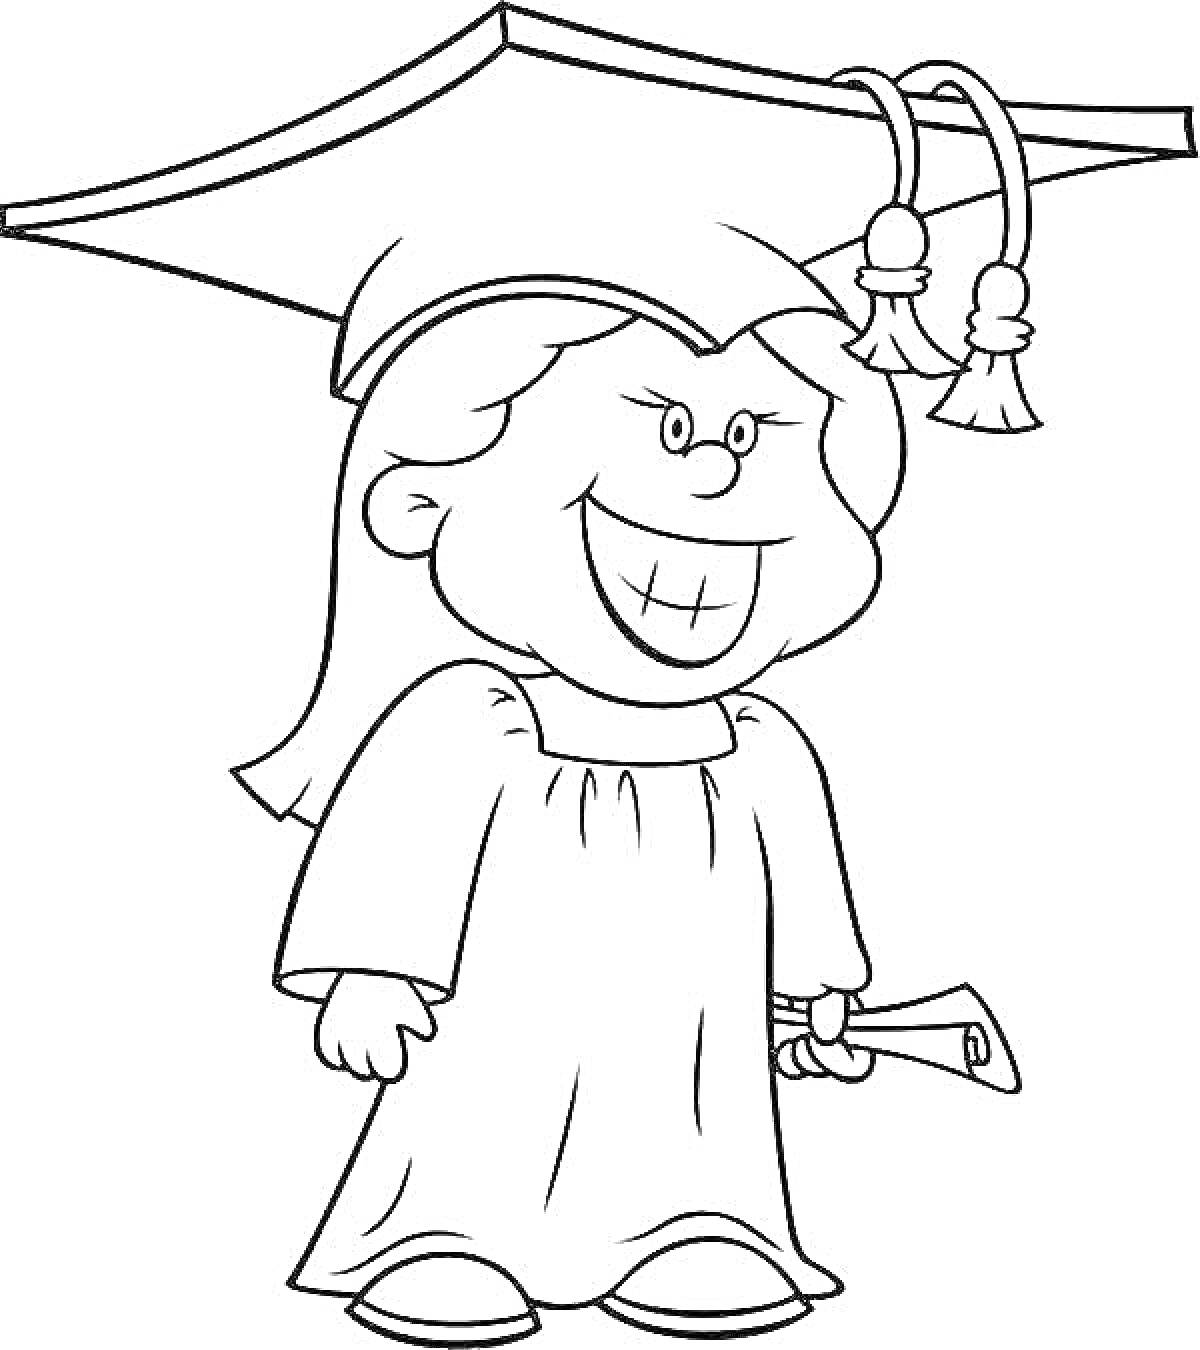 Раскраска Студентка в академической шапочке с дипломом в руке